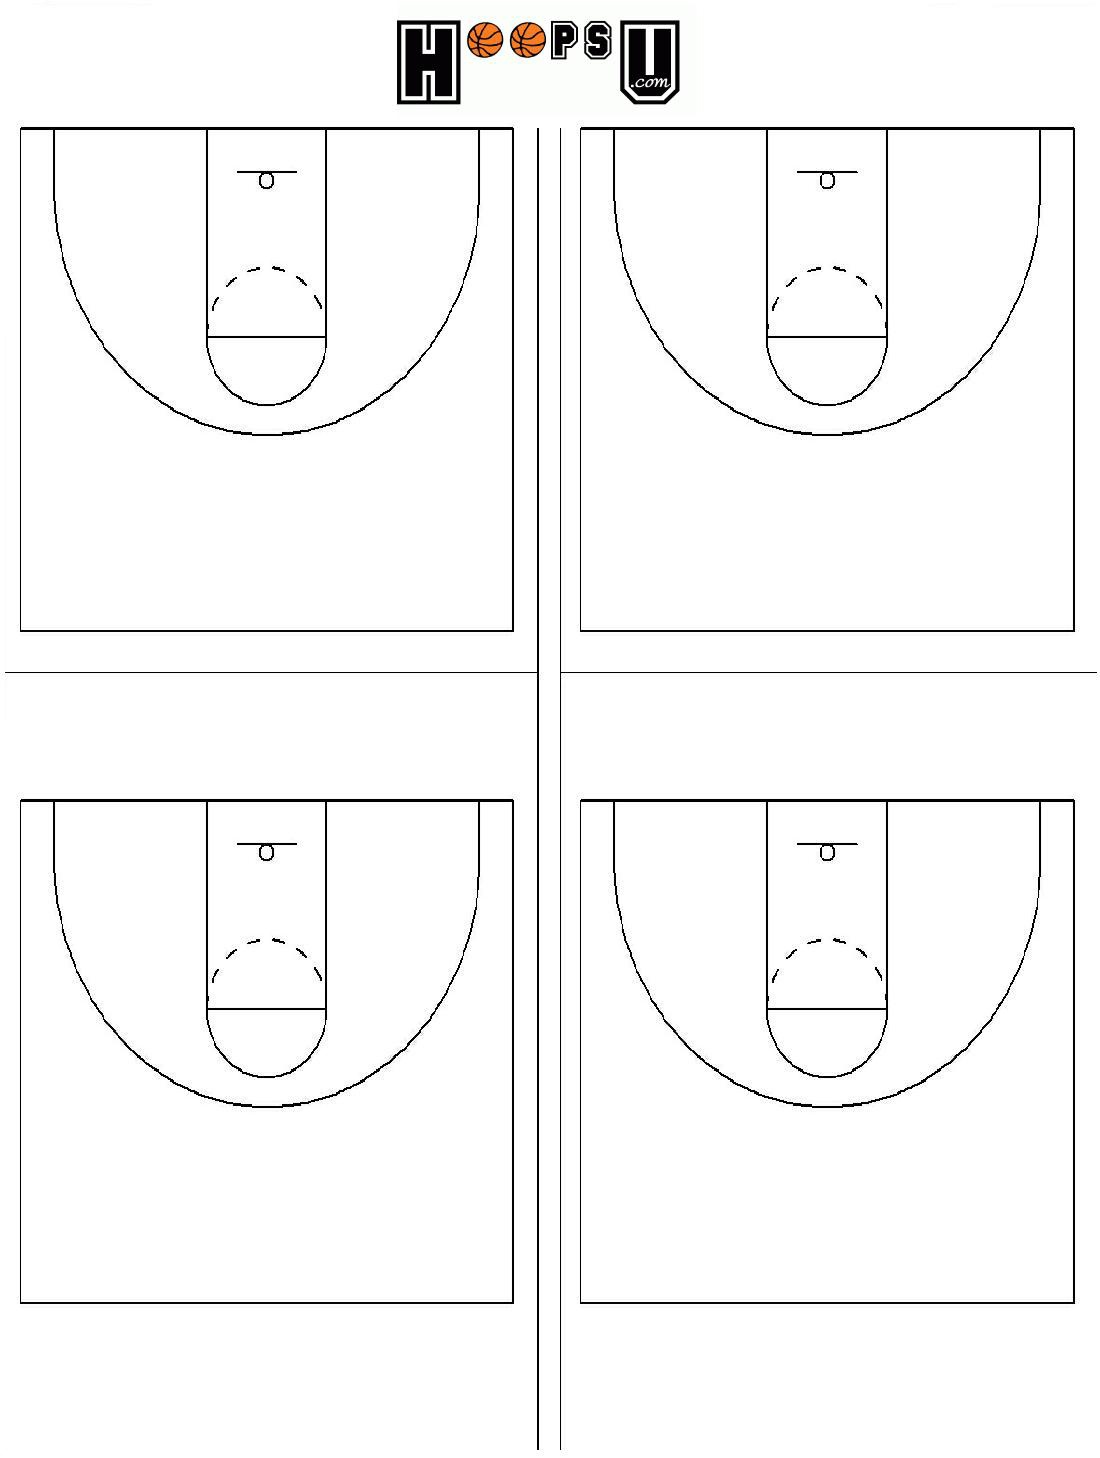 basketball-court-diagram-printable-printable-world-holiday